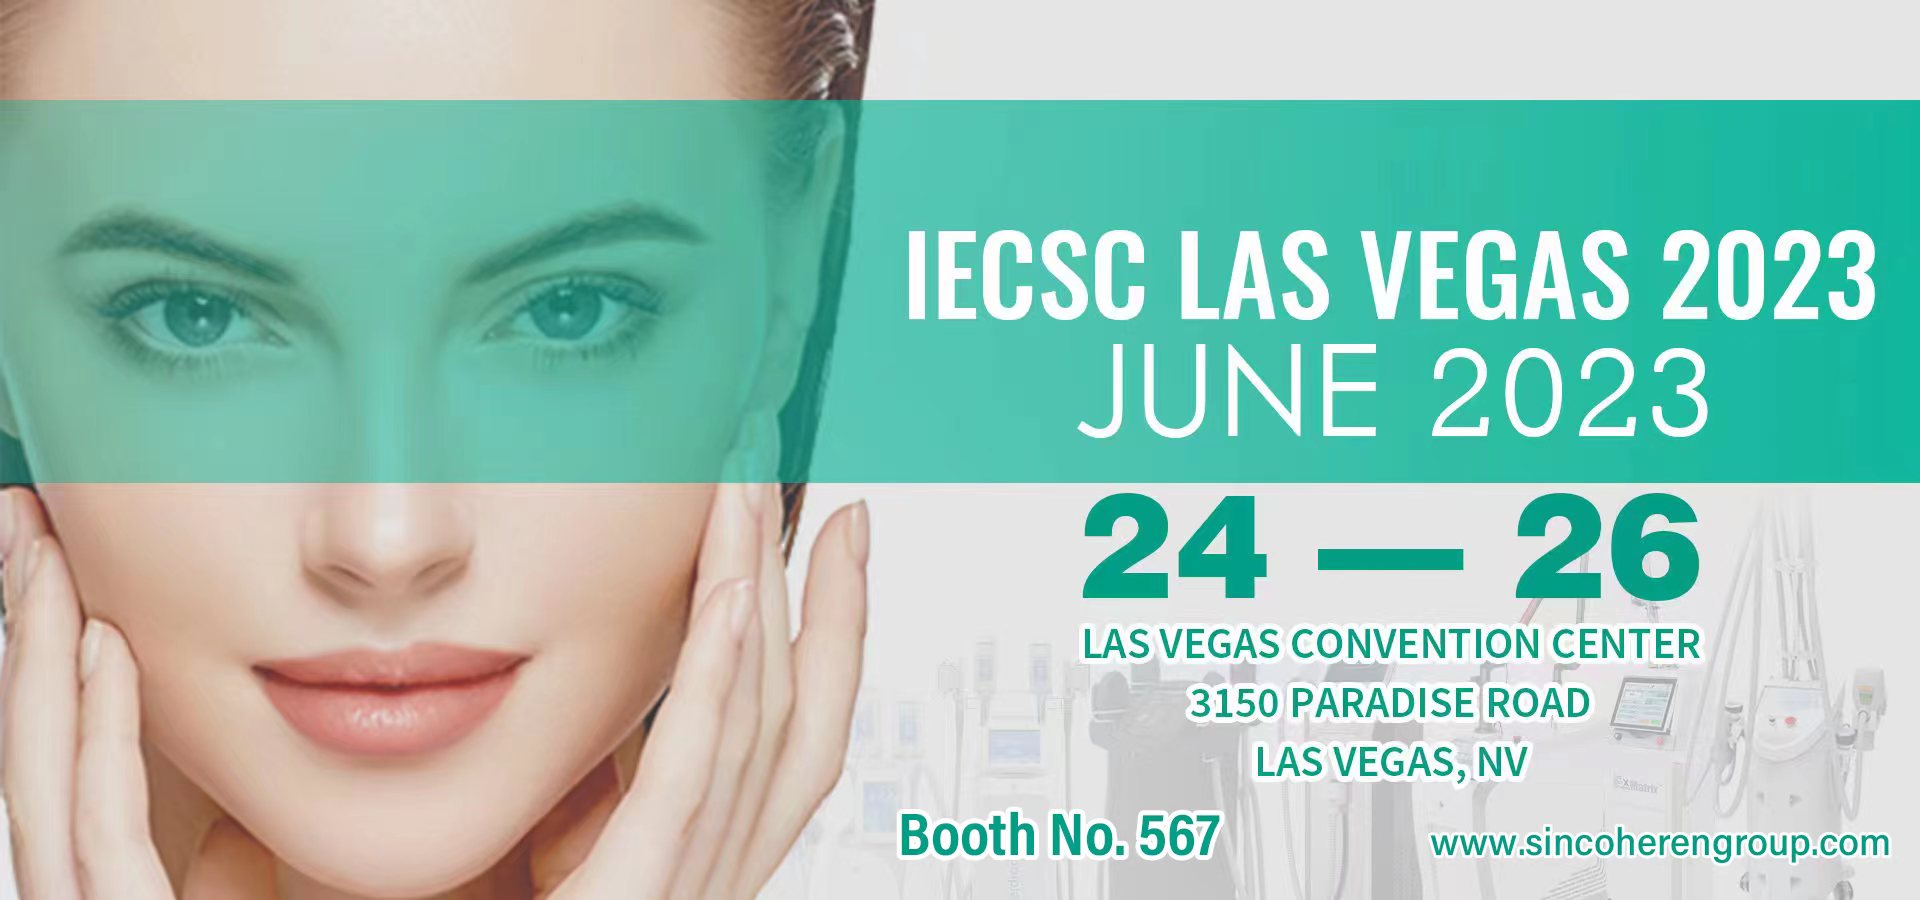 Sincoheren us convida a assistir a l'exposició de bellesa de l'IECSC Las Vegas